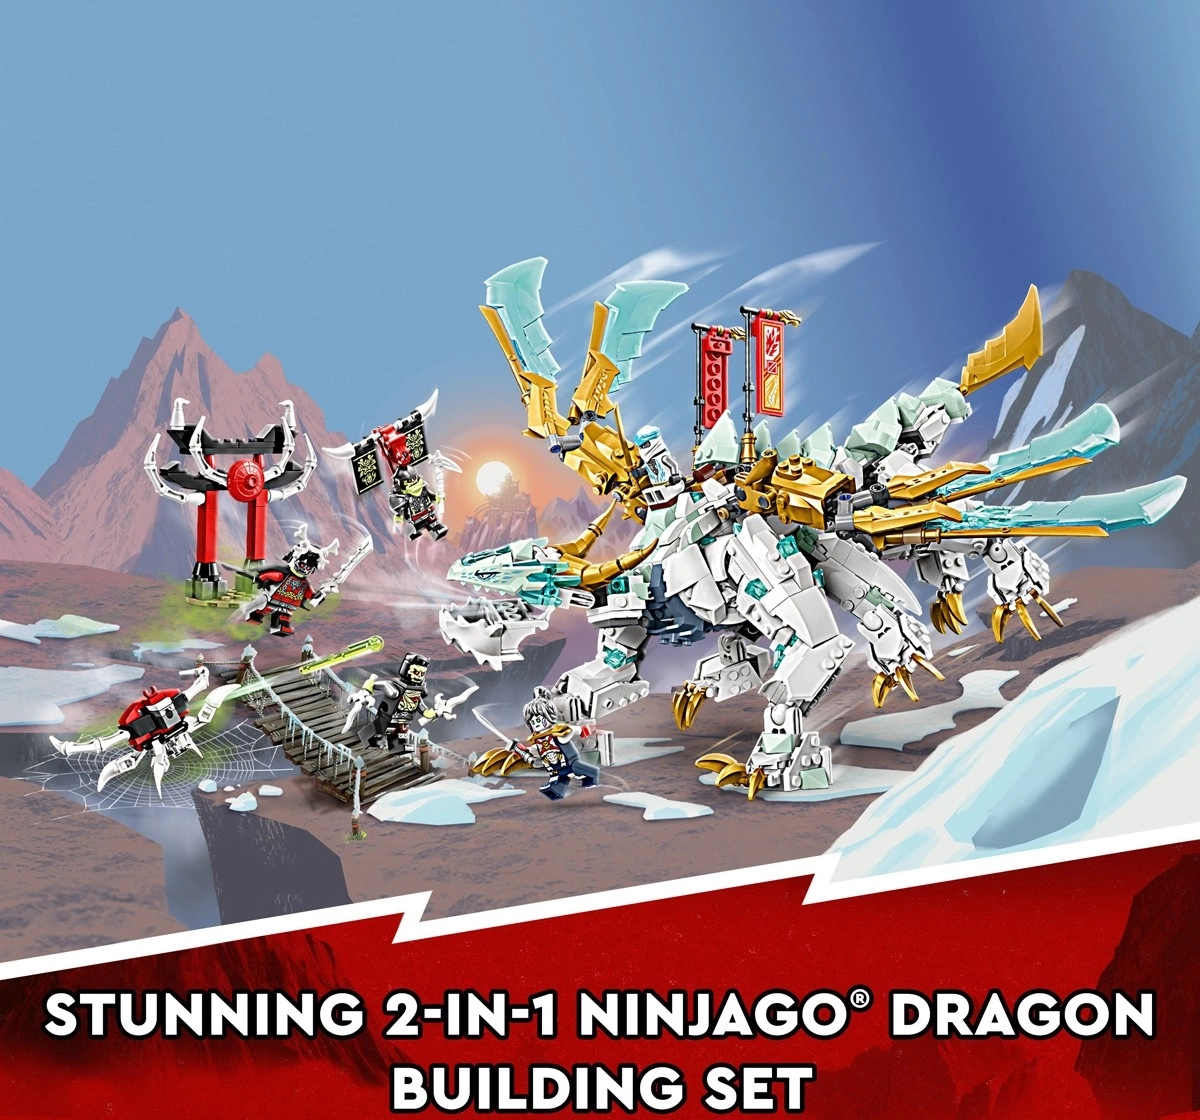 LEGO NINJAGO Zane’s Ice Dragon Creature 71786 Building Toy Set 973 Pieces Multicolour 10Y+